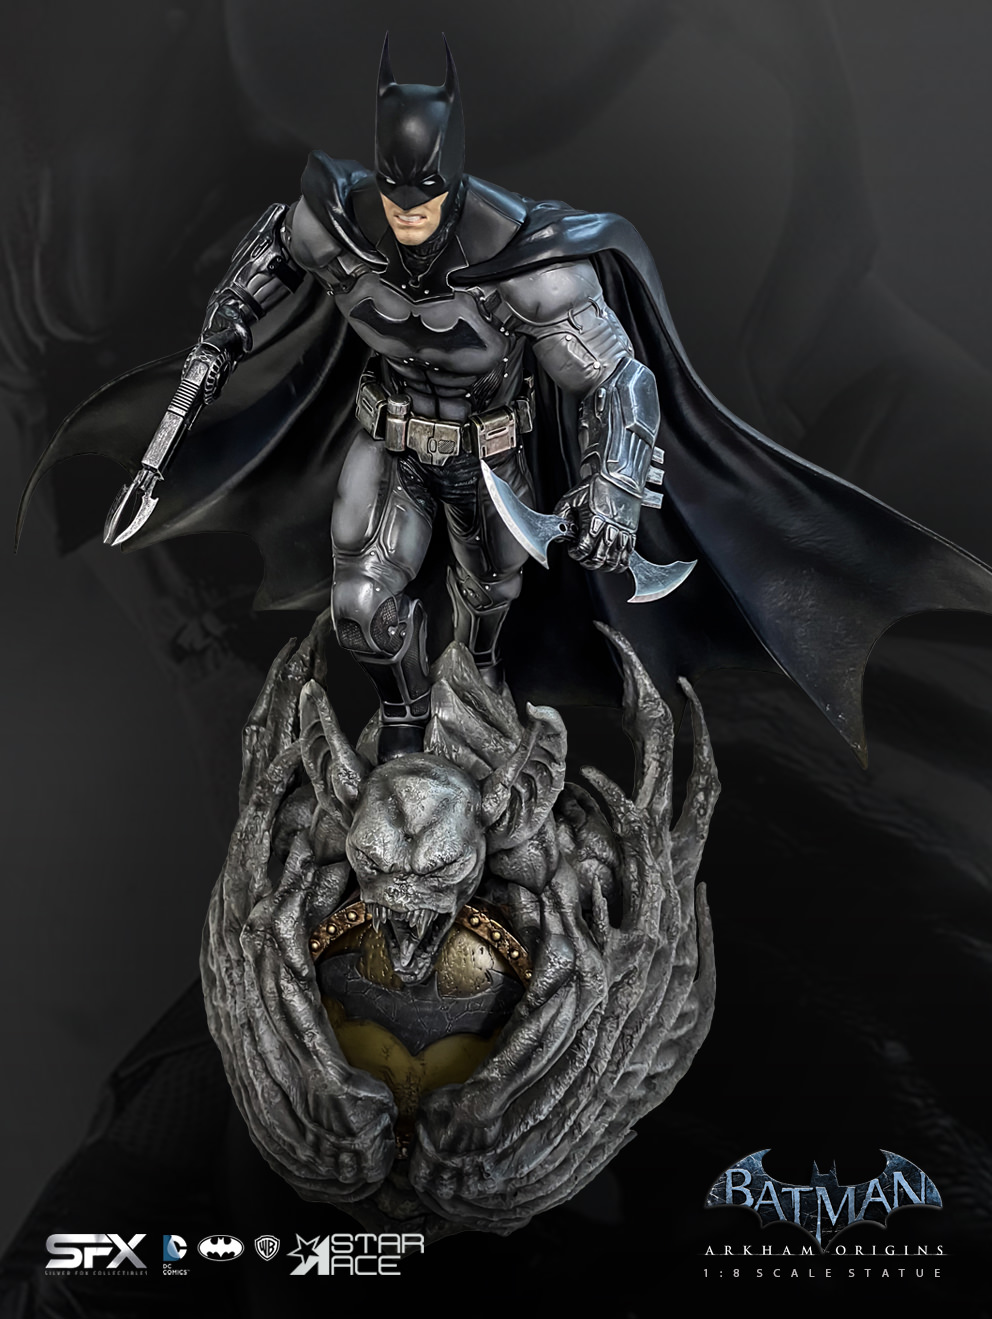 Batman Arkham Origins Exclusive Edition (Prototype Shown) View 28